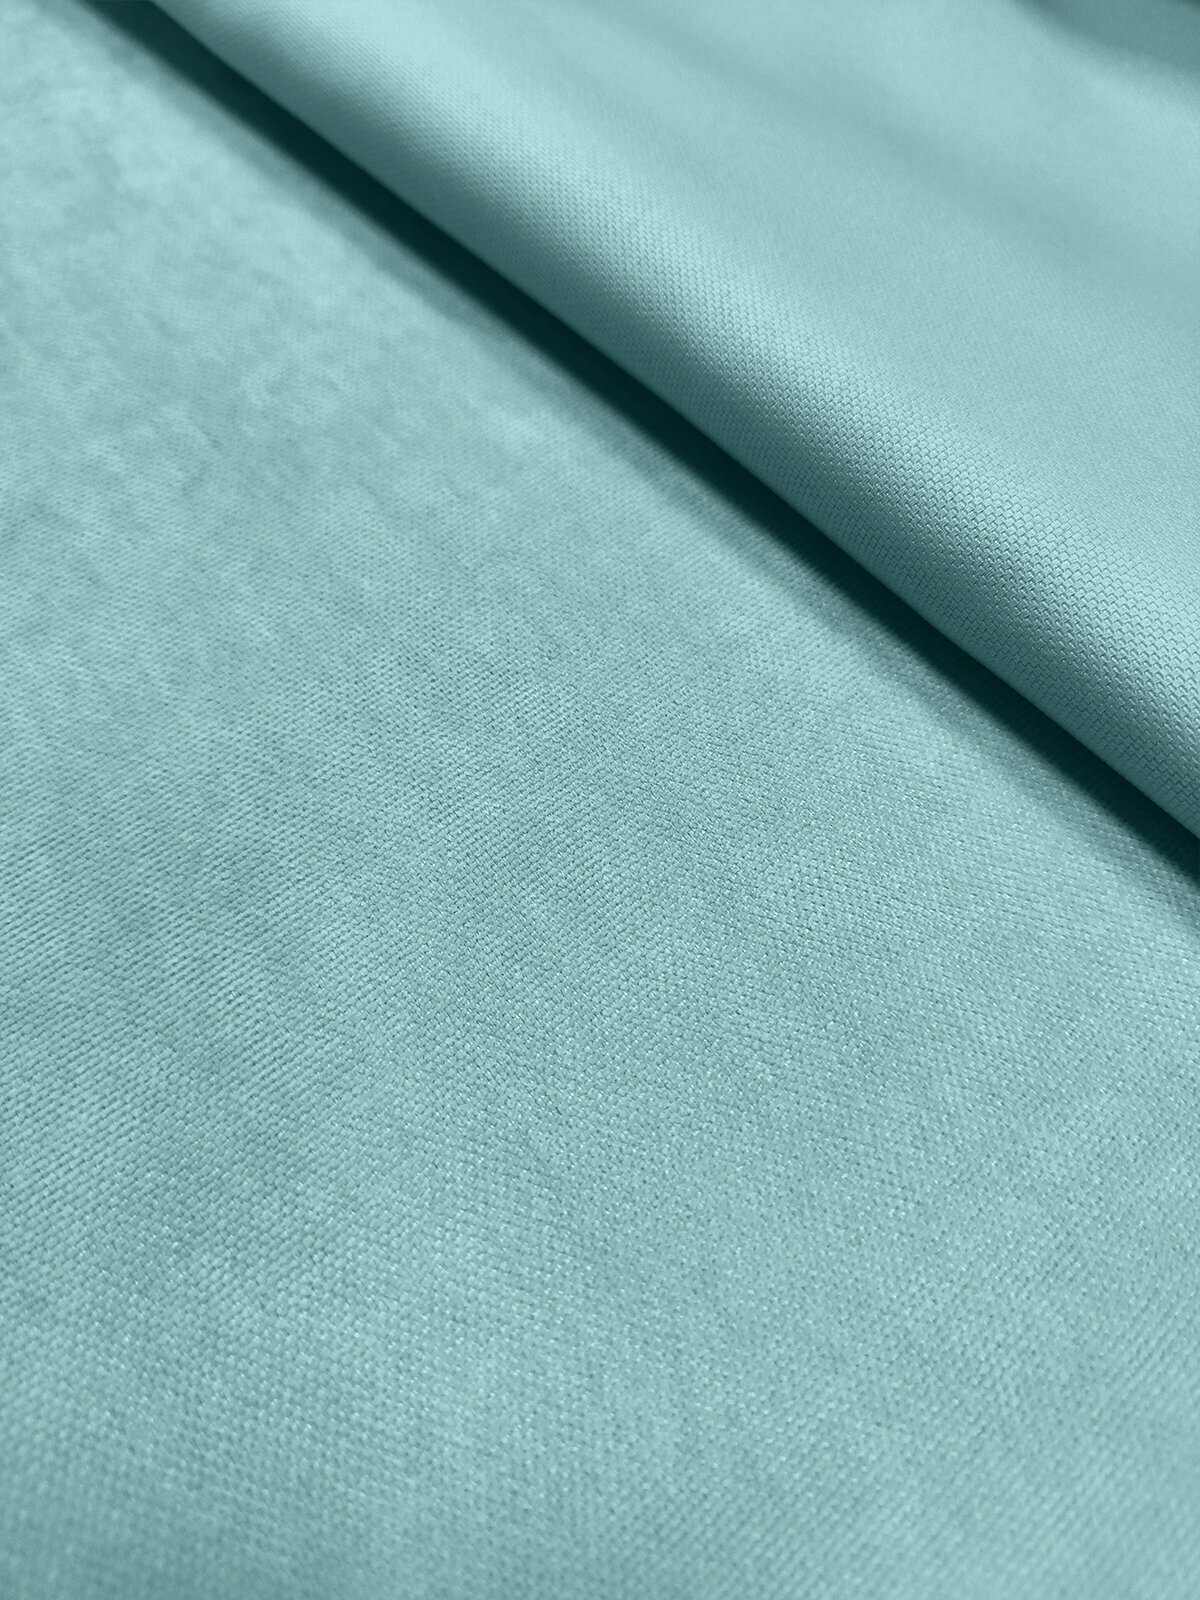 Покрывало плед стеганое Велюр - канвас Светло бирюзовый, голубой, 220 х 235 см. на кровать, диван с подкладкой синтепон - фотография № 6